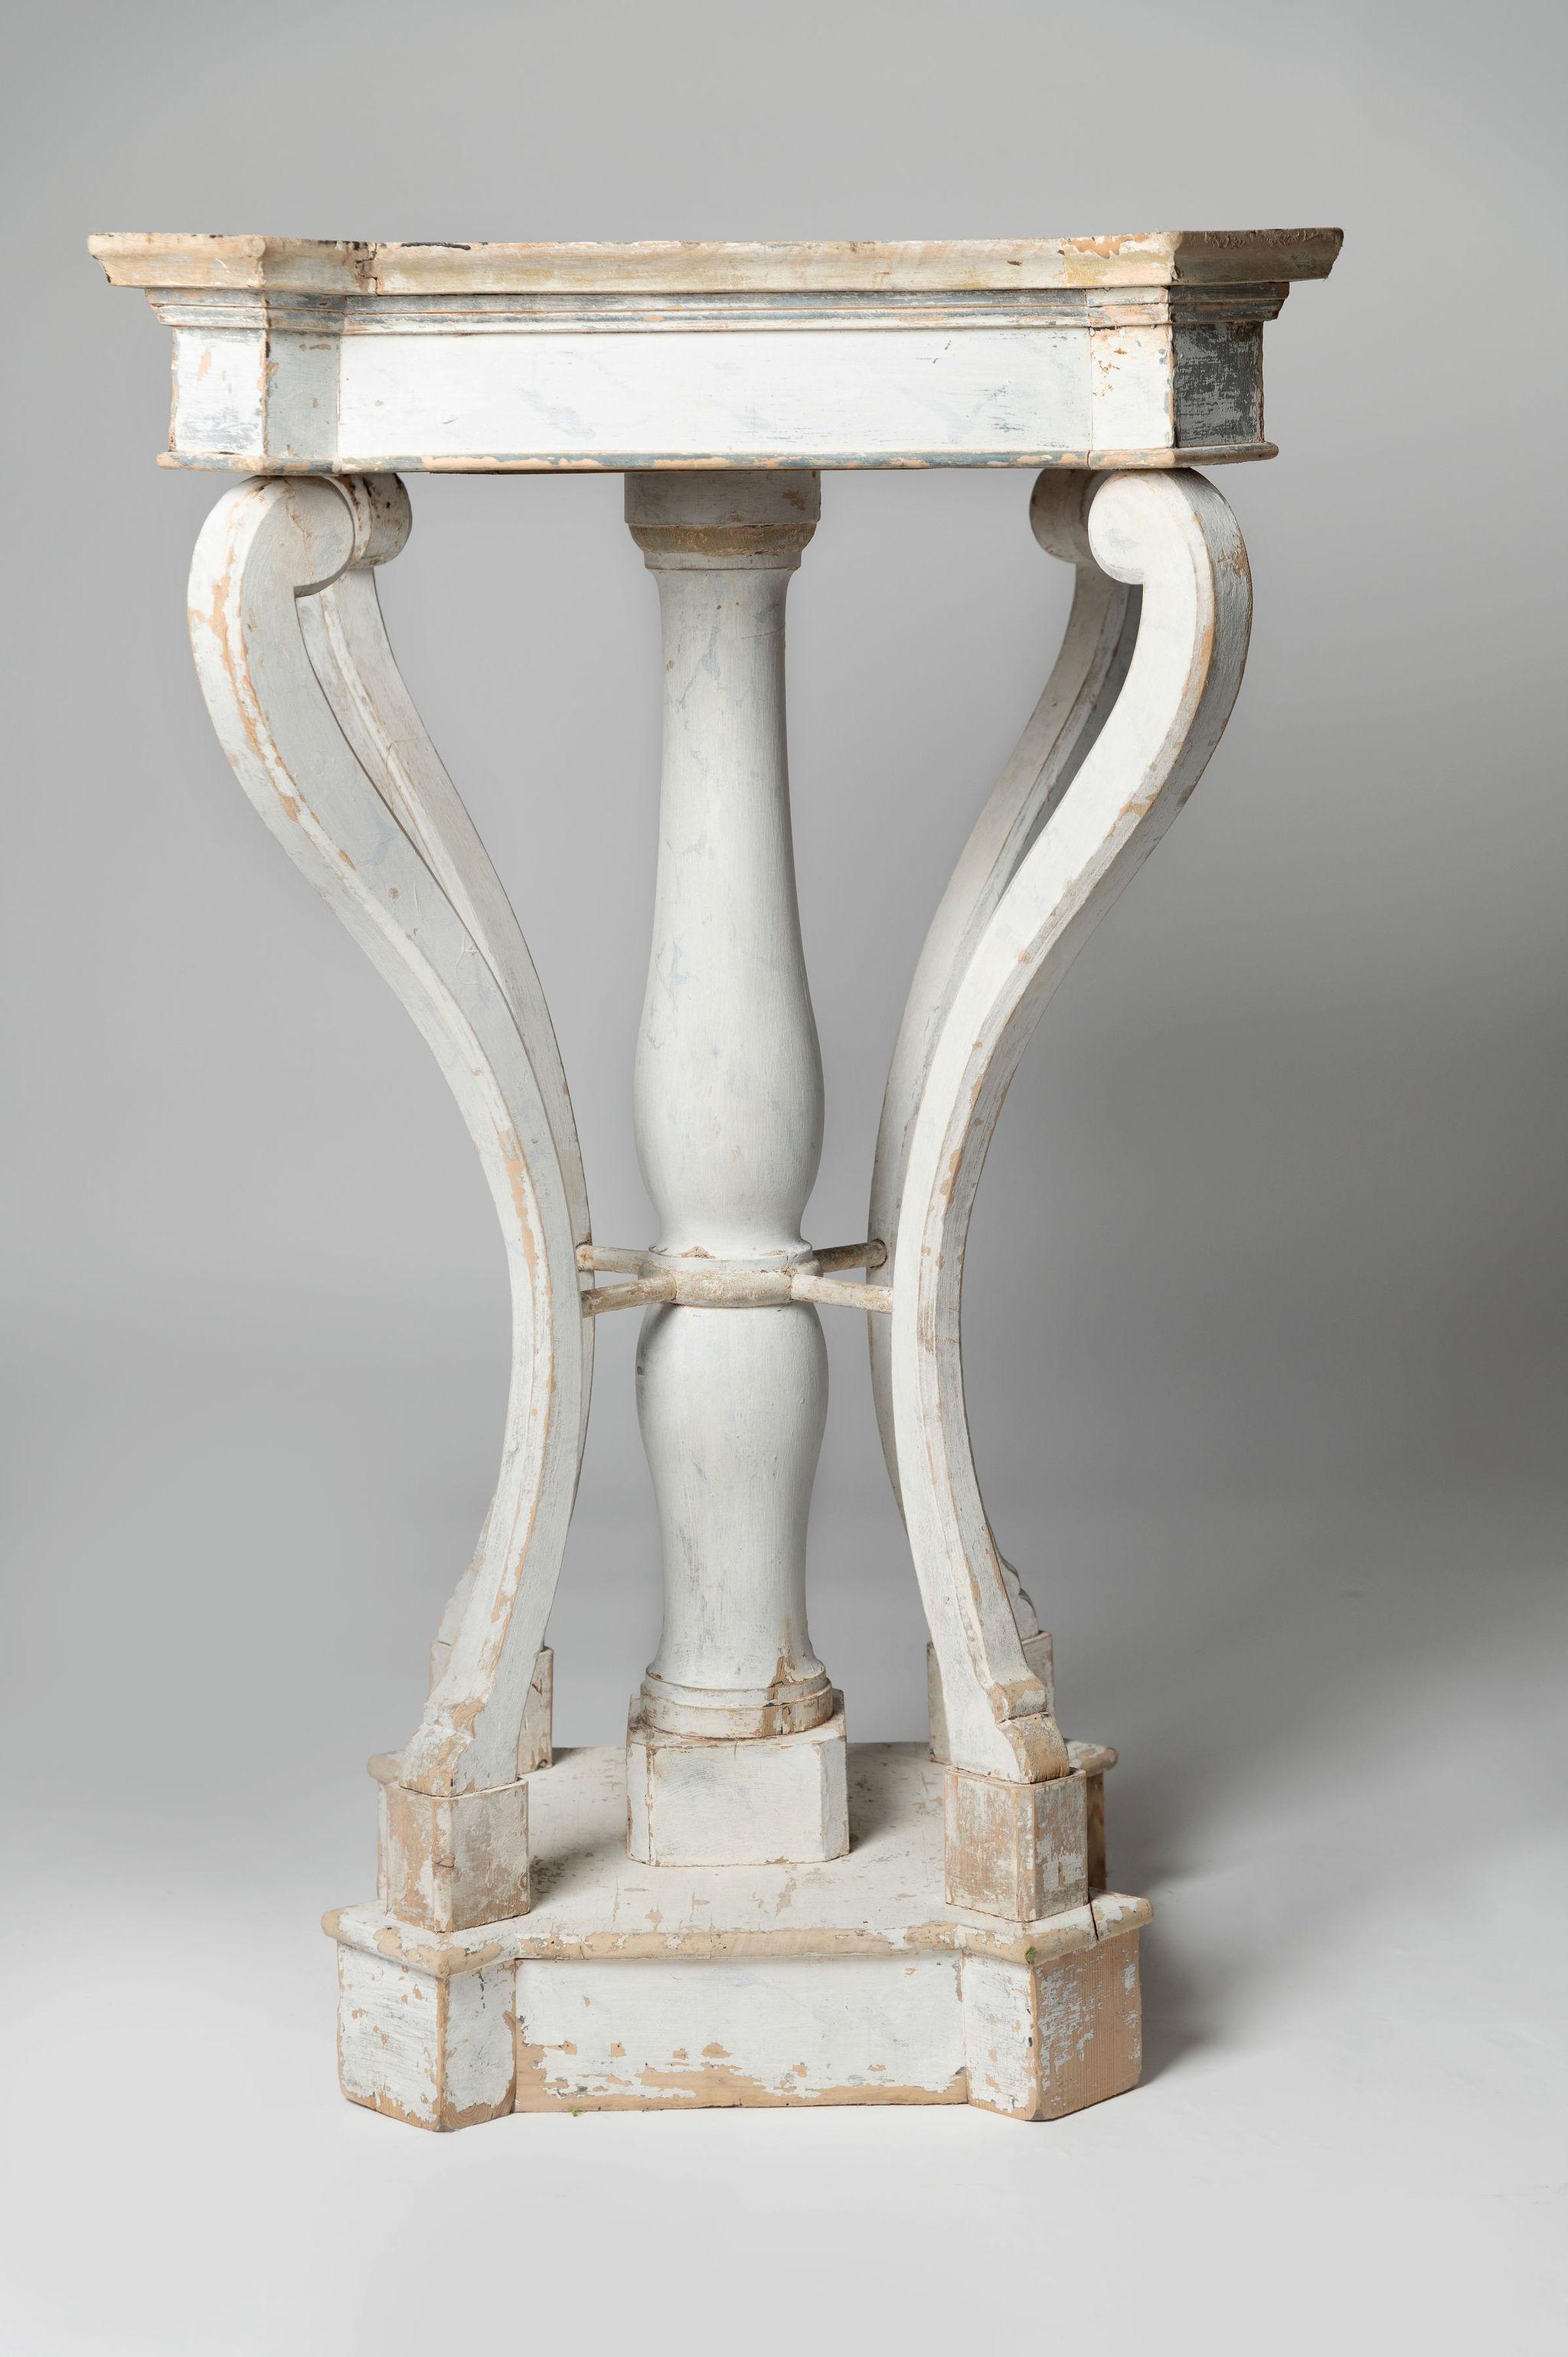 Ungewöhnliche 19. Jahrhundert Französisch Tisch - Sockel, Originalfarbe, stark und gesund, eine gute Größe oben eine Statue, große Lampe etc. zu präsentieren, 18,75 Zoll x 18,75 Zoll auf der Oberseite.
Die aus Stein gehauene Statue aus dem 16.